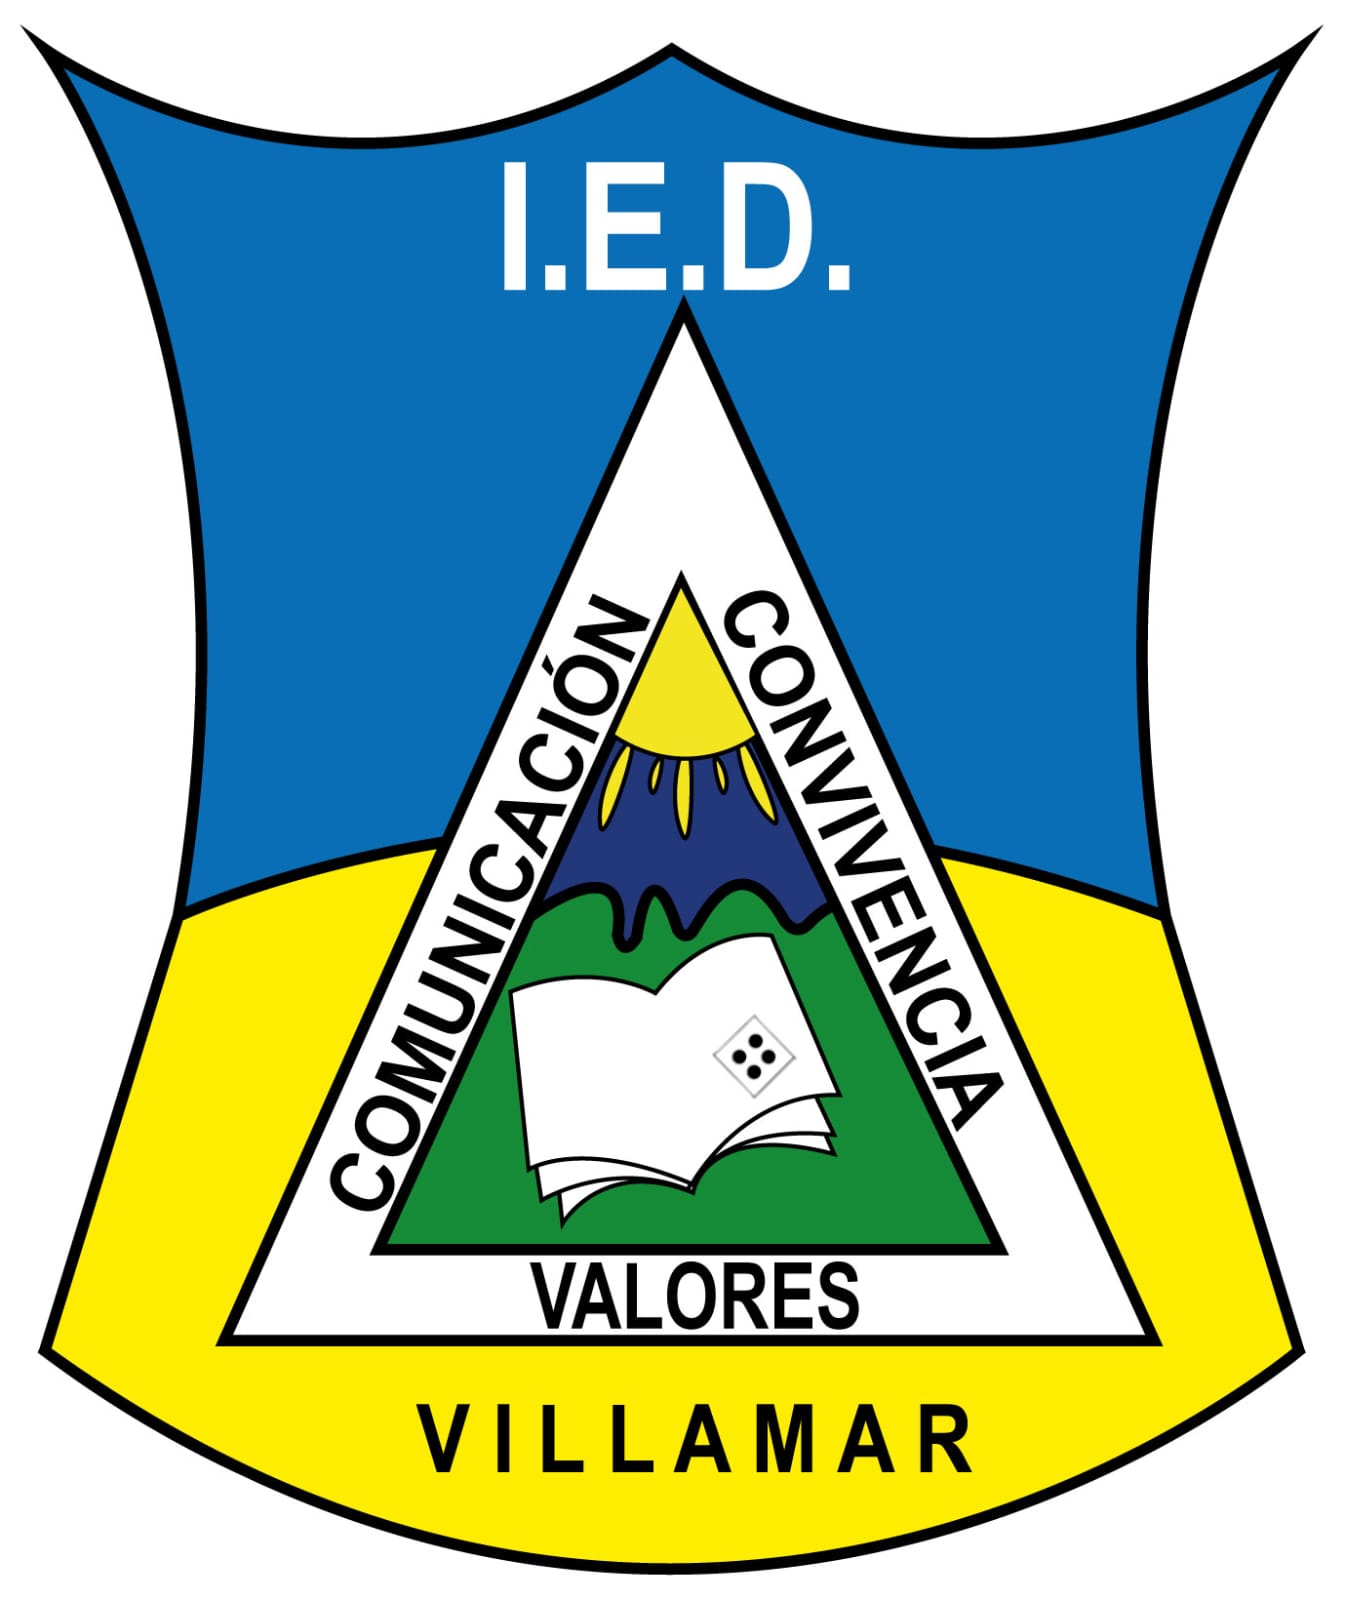 Escudo Colegio Villamar IED